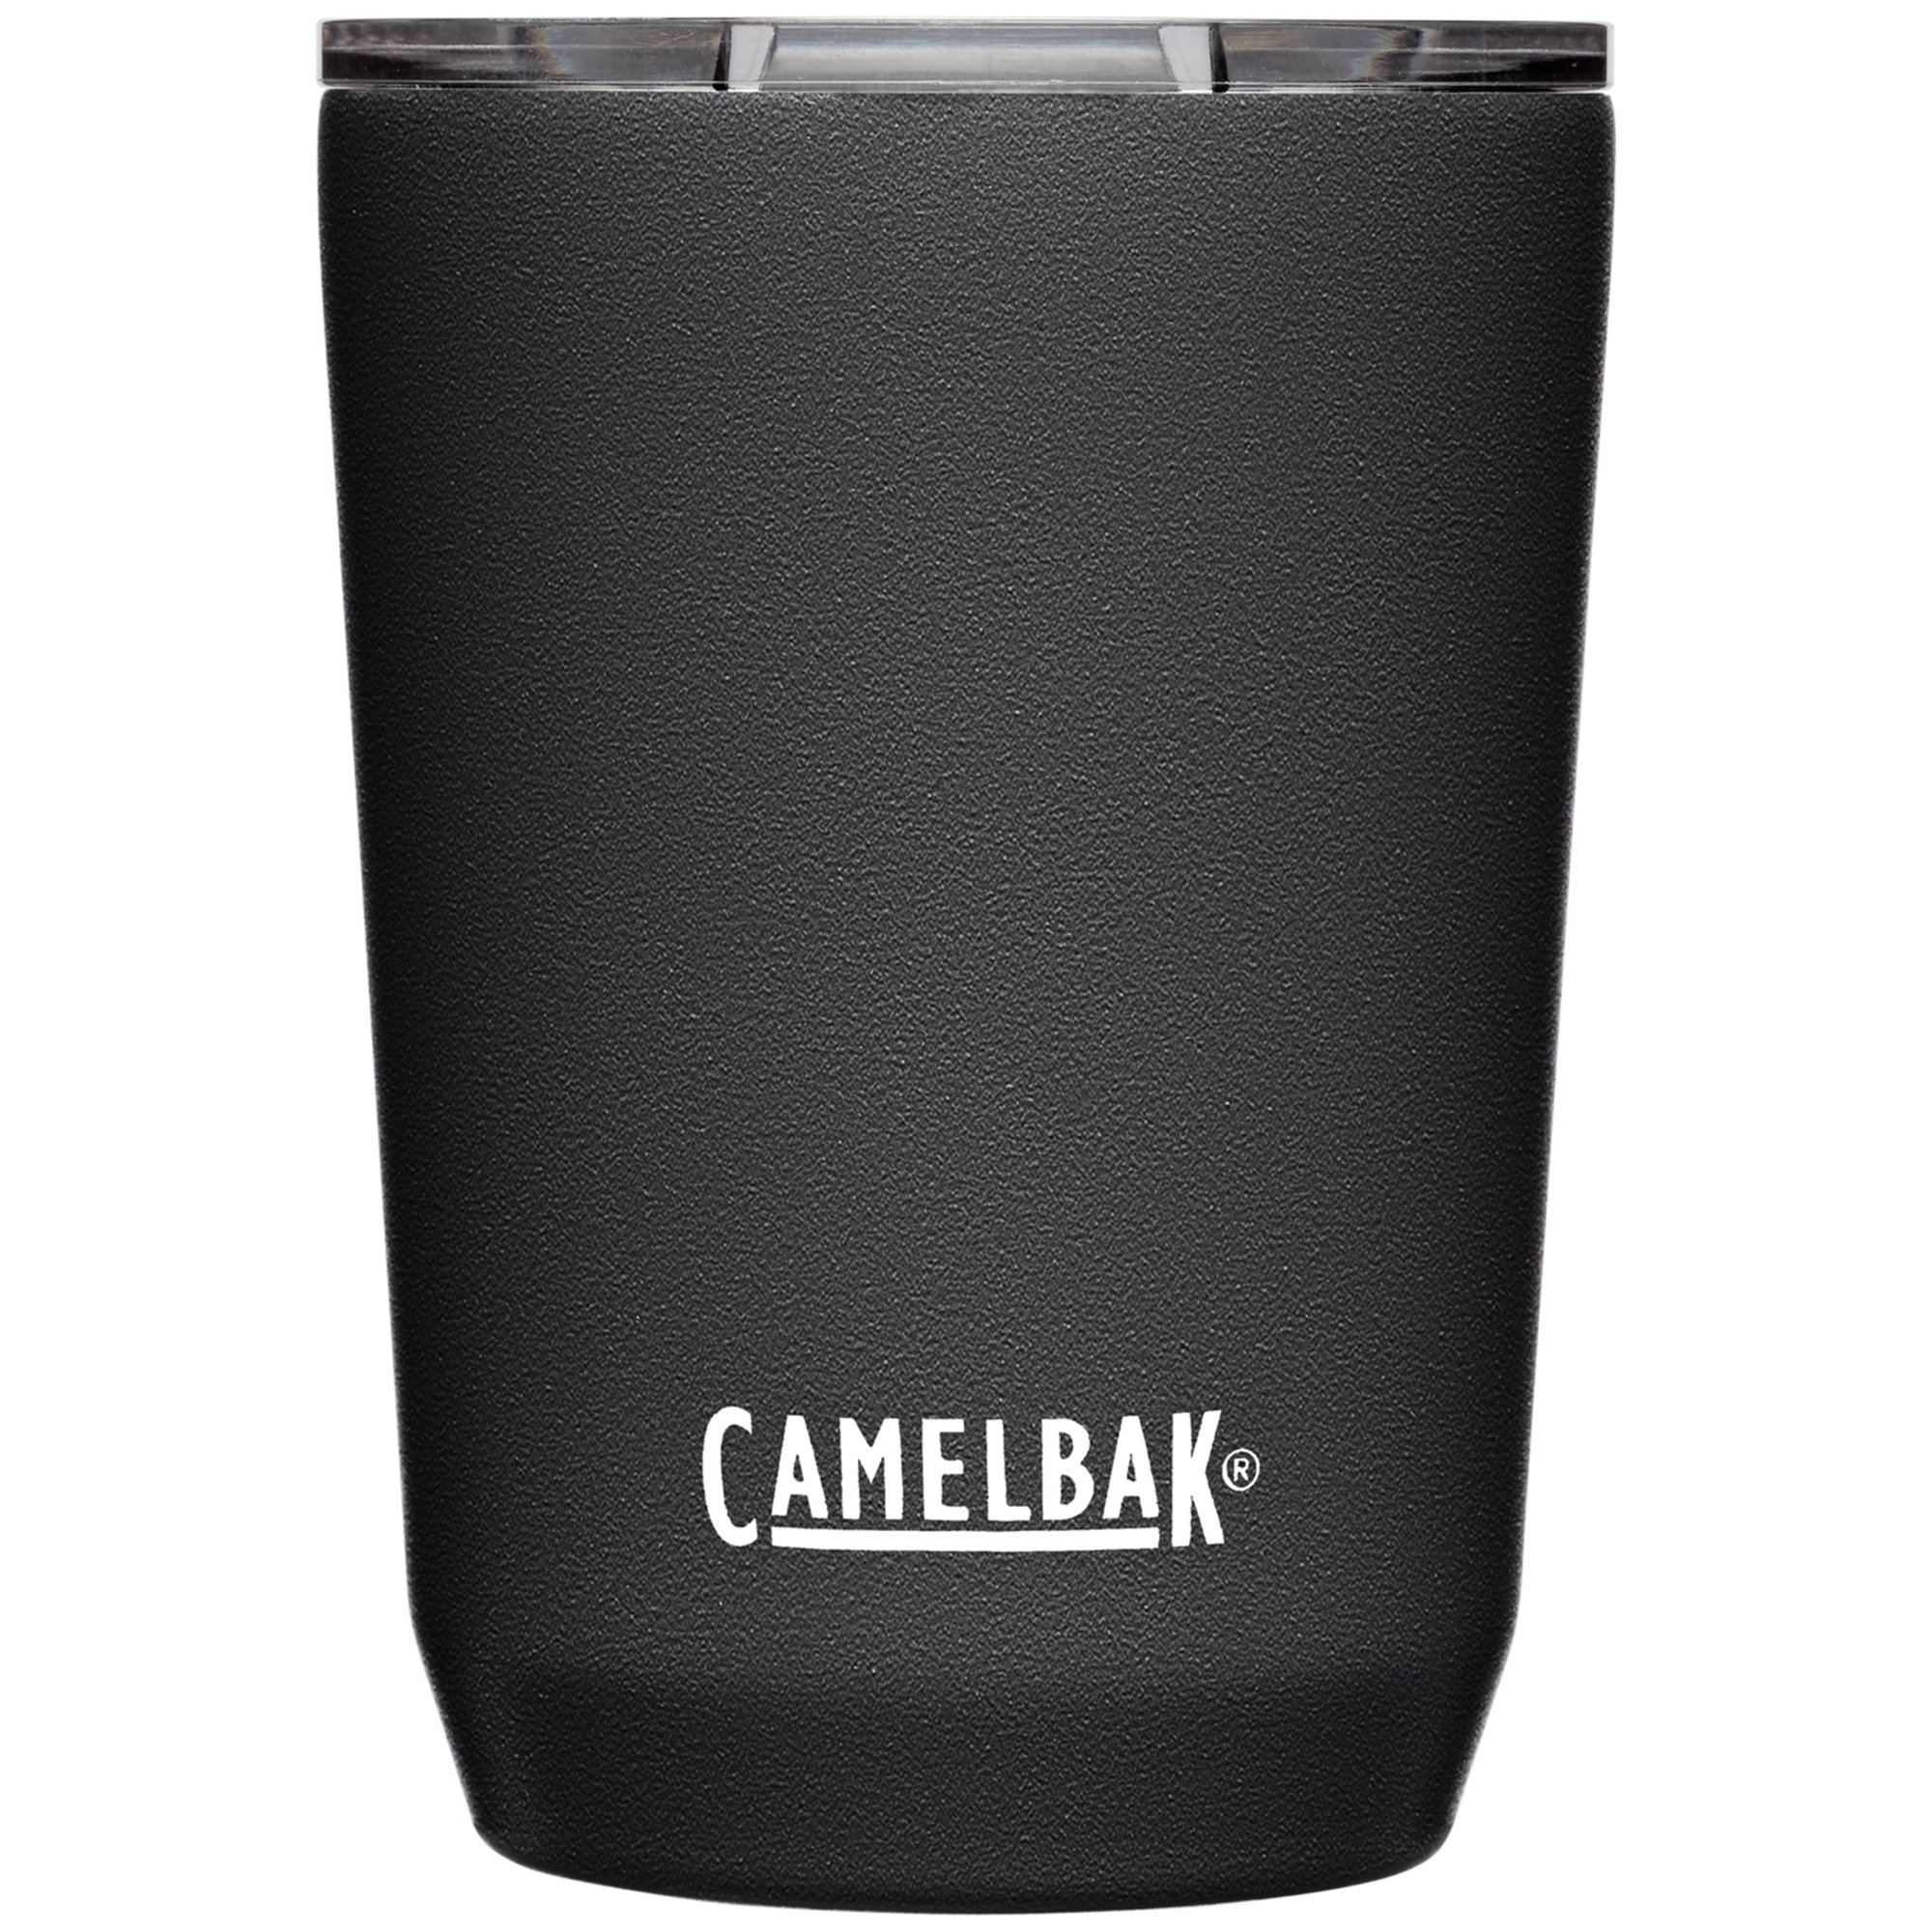 Camelbak Tumbler termokrus 0.35 liter black